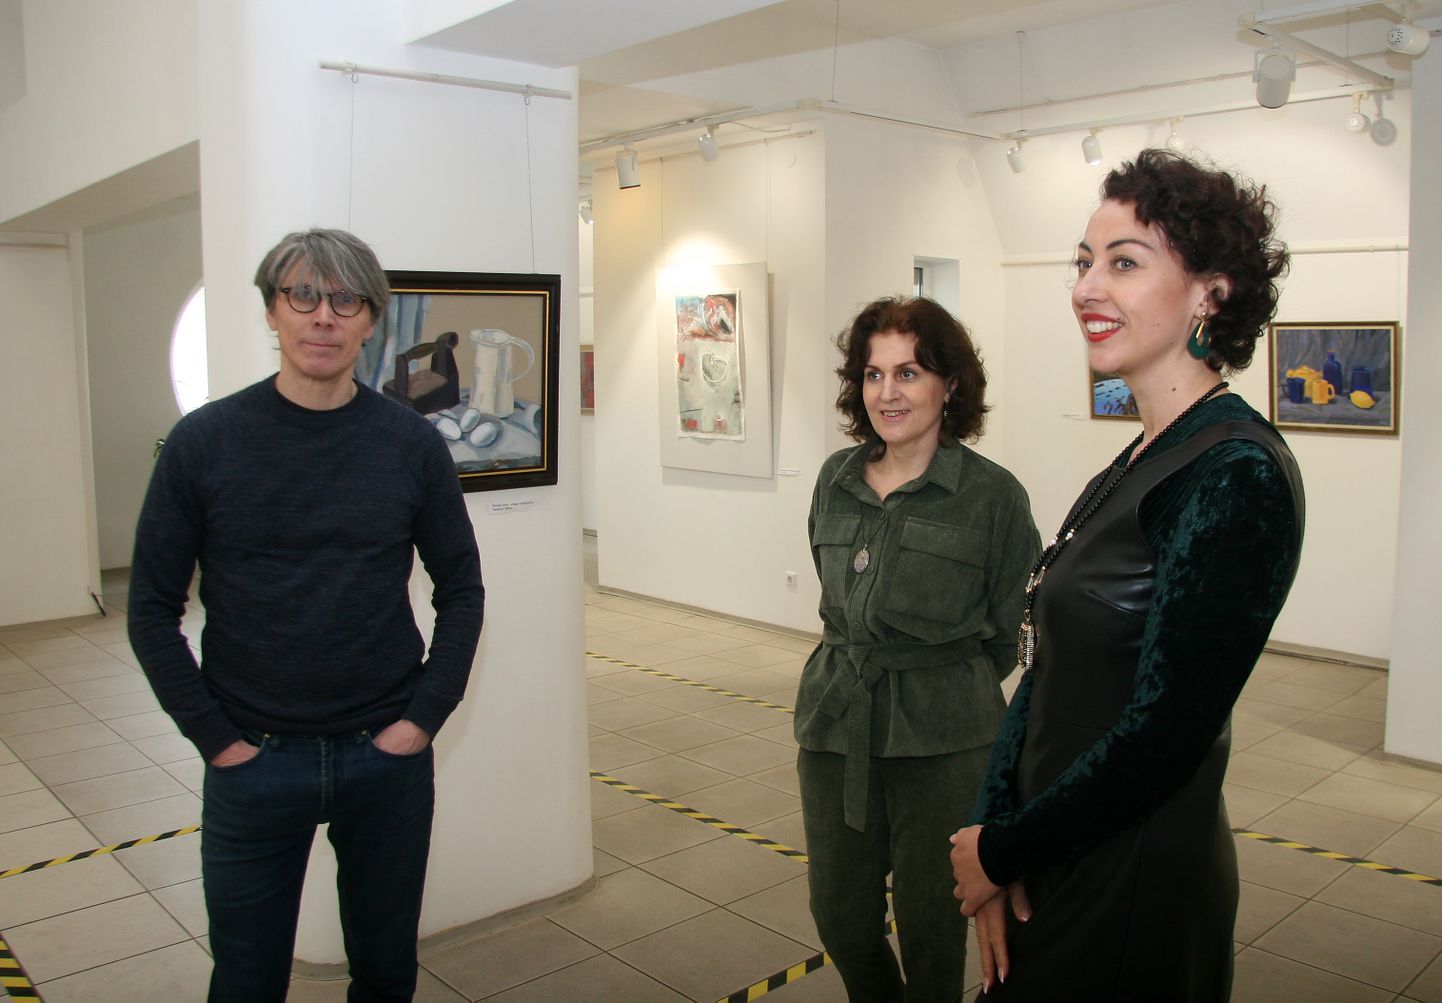 Юрий Хорев, Елена Беляева и Анастасия Паалонен пришли в зал, чтобы рассказать о выставке в прямой трансляции.